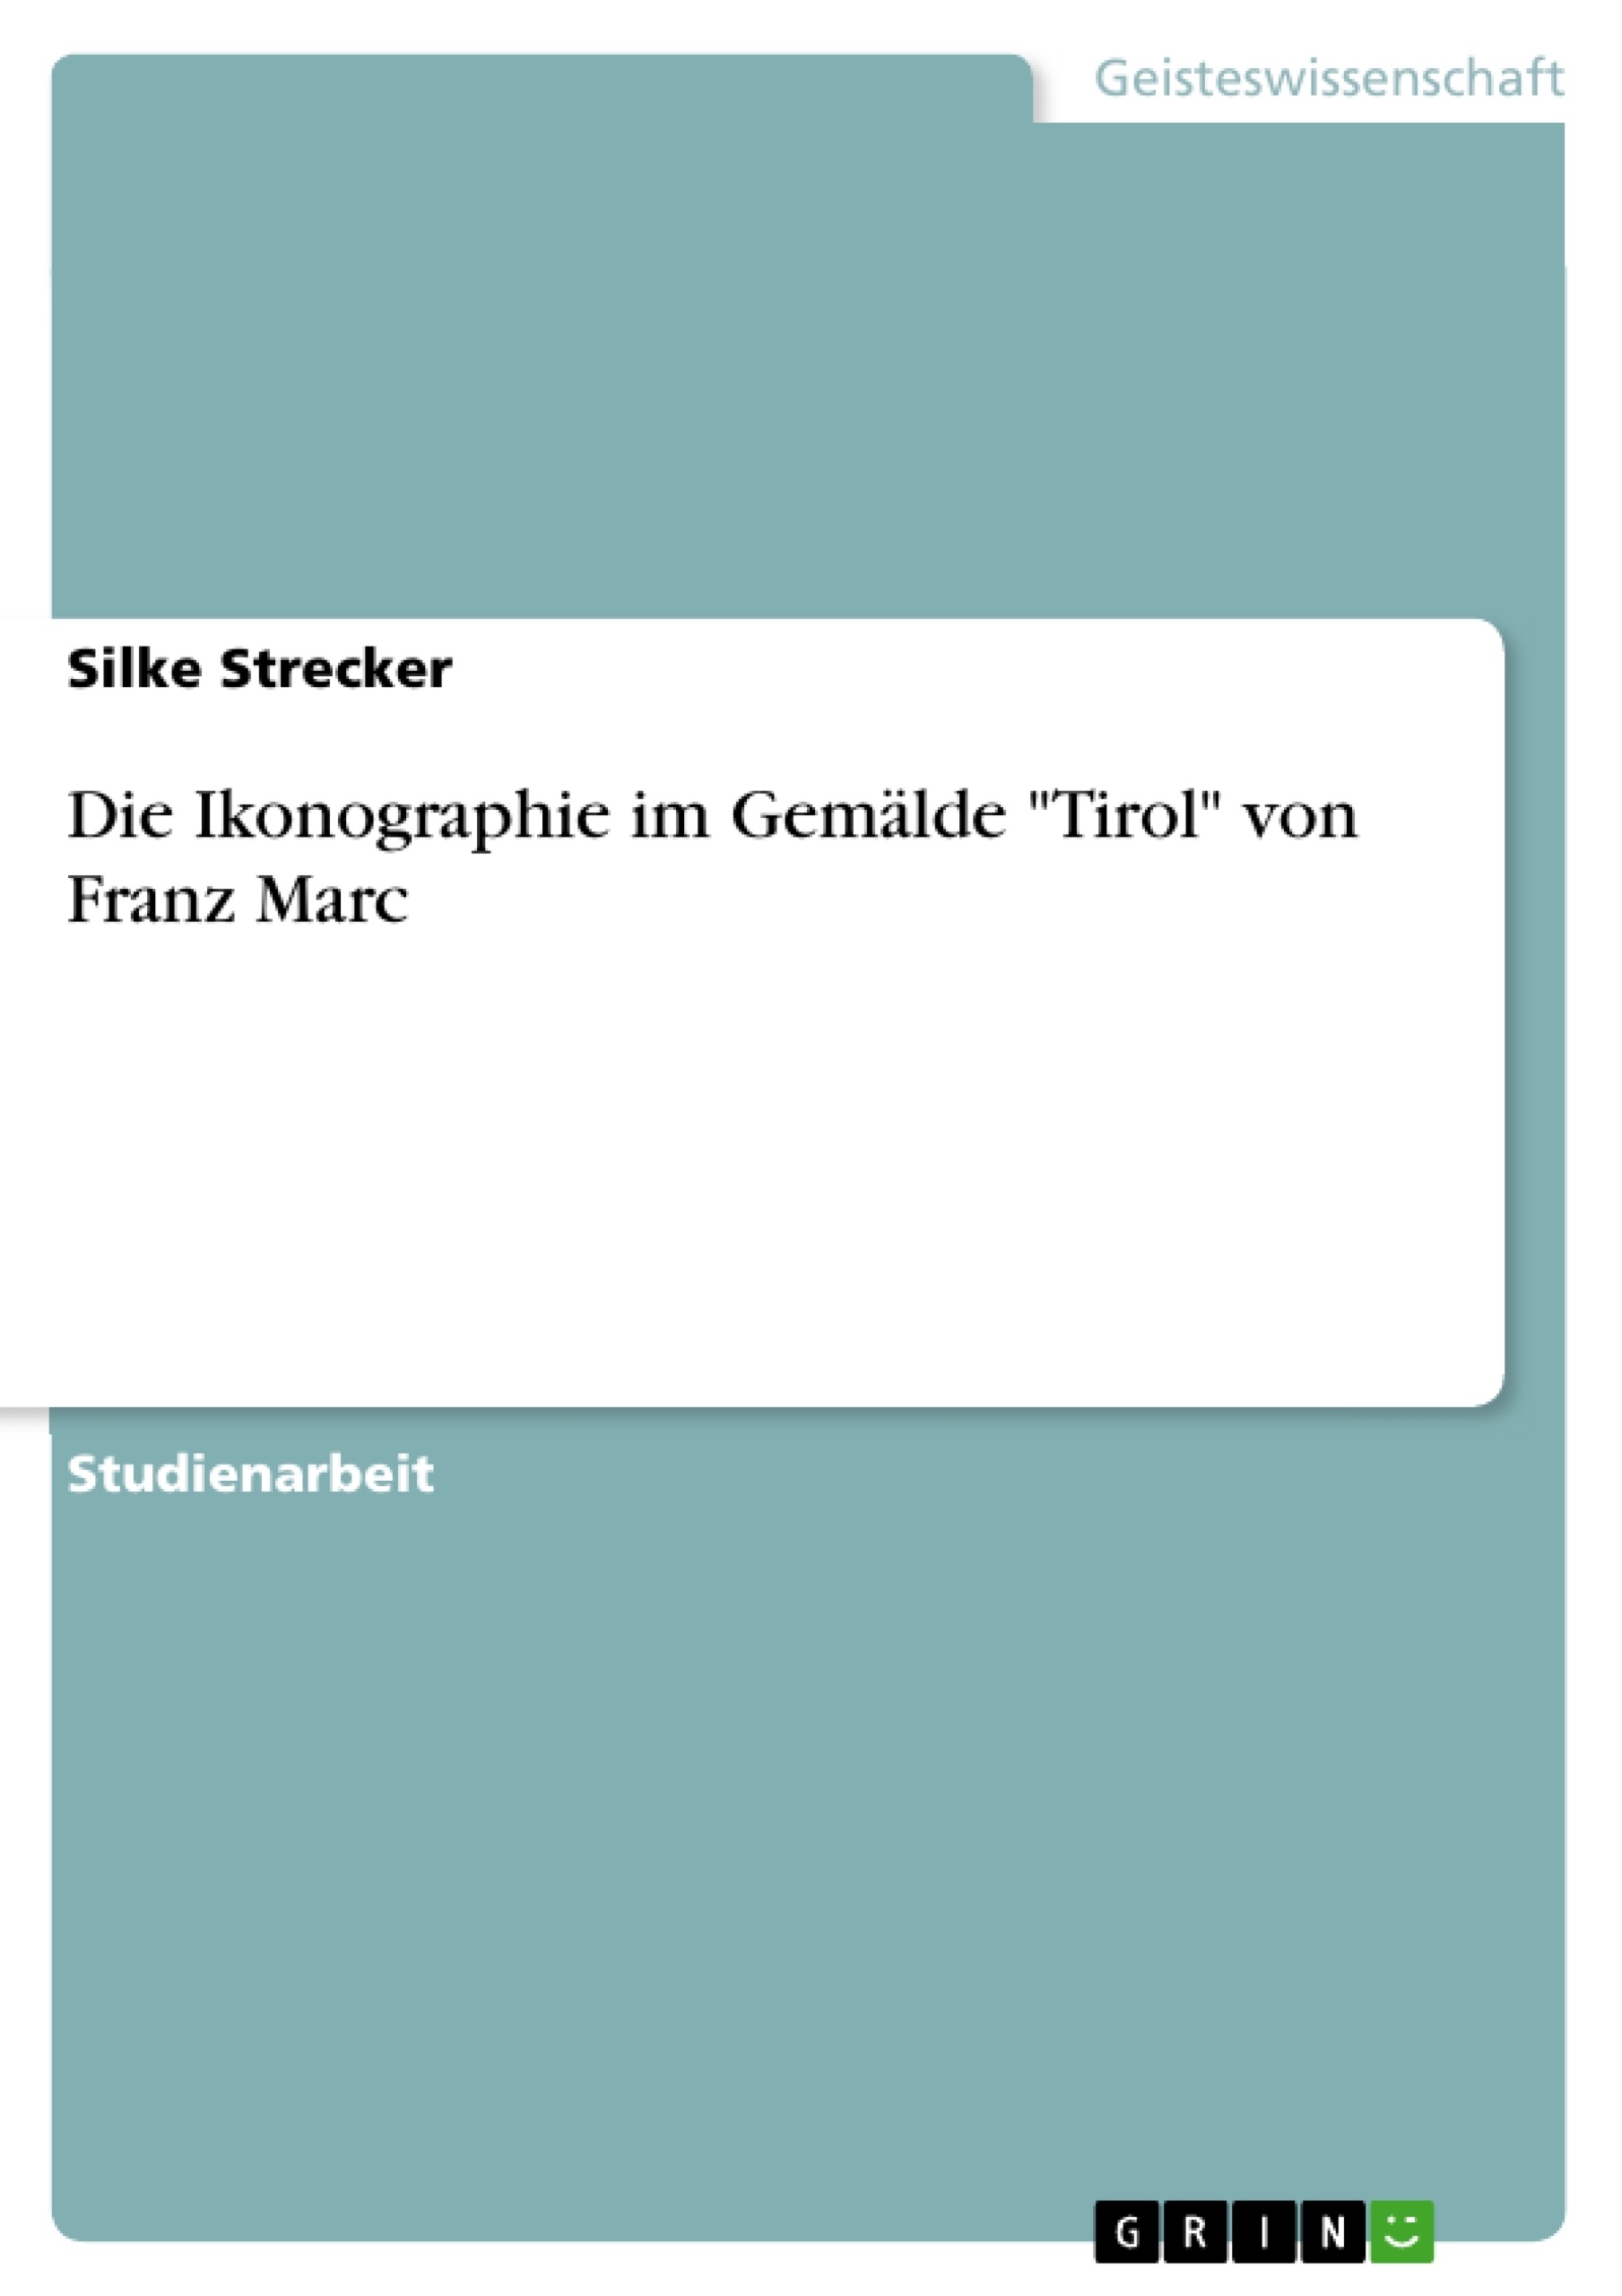 Título: Die Ikonographie im Gemälde "Tirol" von Franz Marc